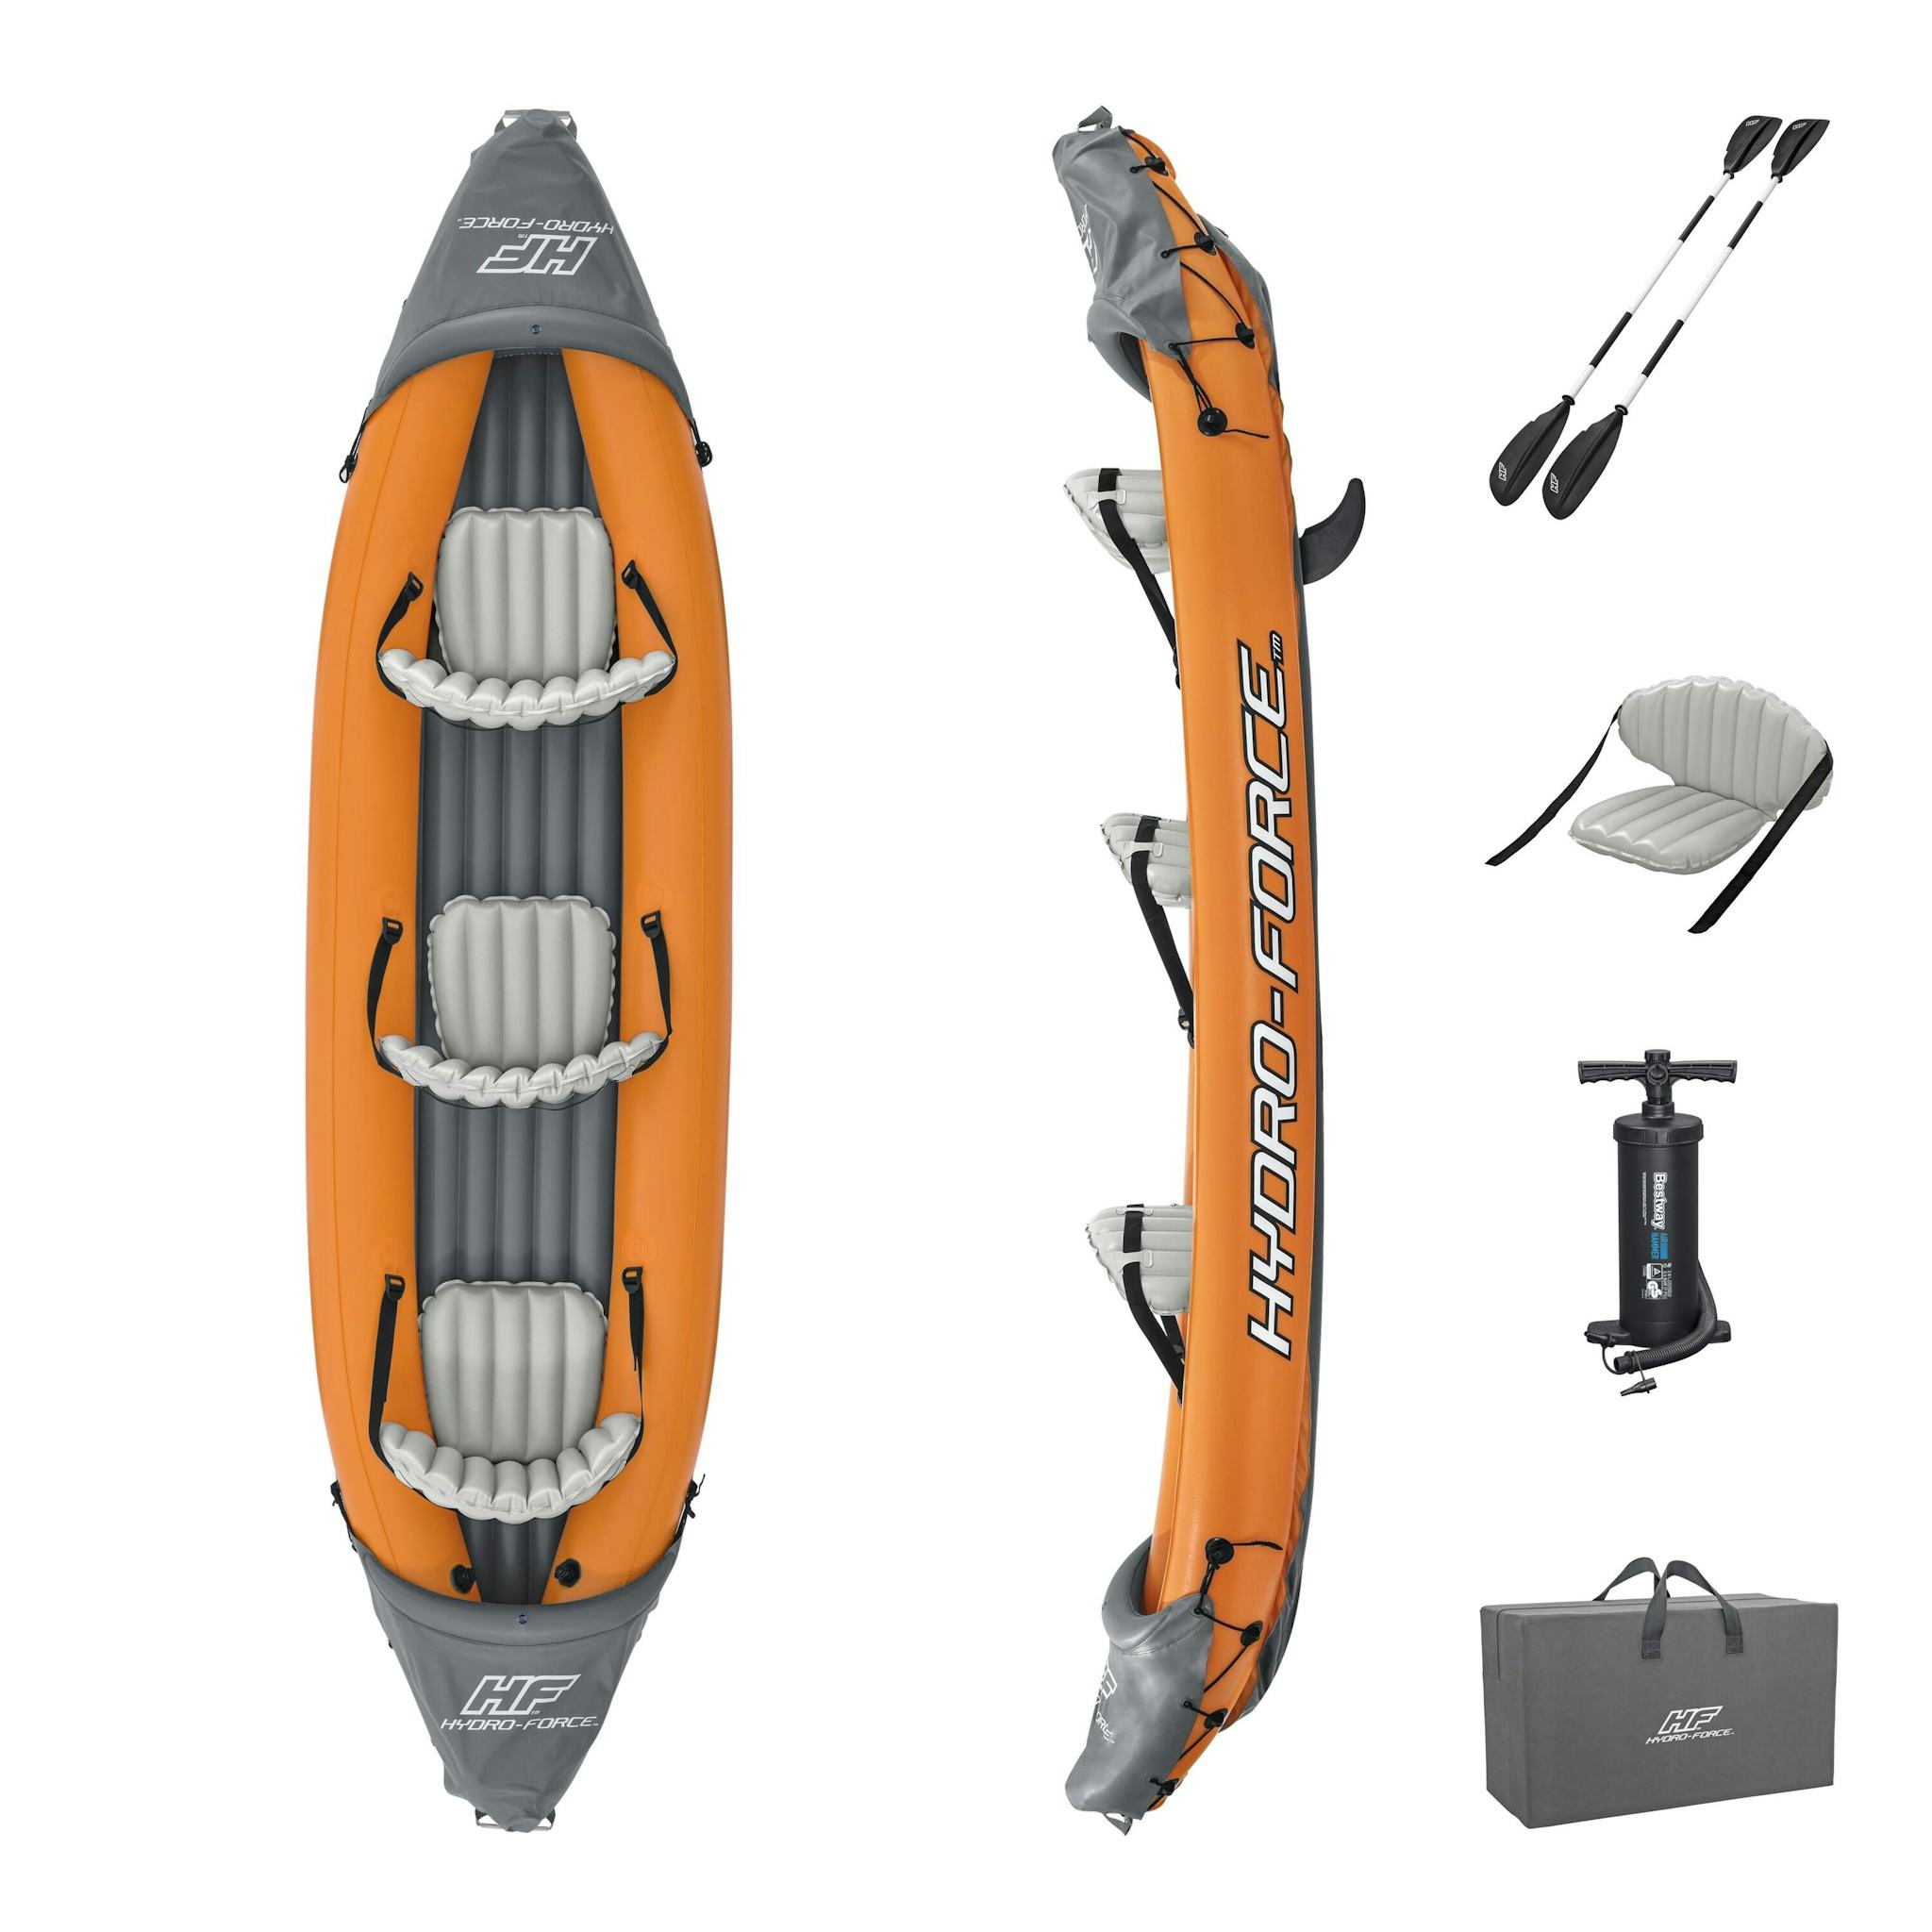 Sports d'eau Kayak gonflable Rapide X3 Hydro-Force™ 381 x 100cm, 3 places, 250 kg max, 2 pagaies, 2 ailerons amovibles et une pompe Bestway 10